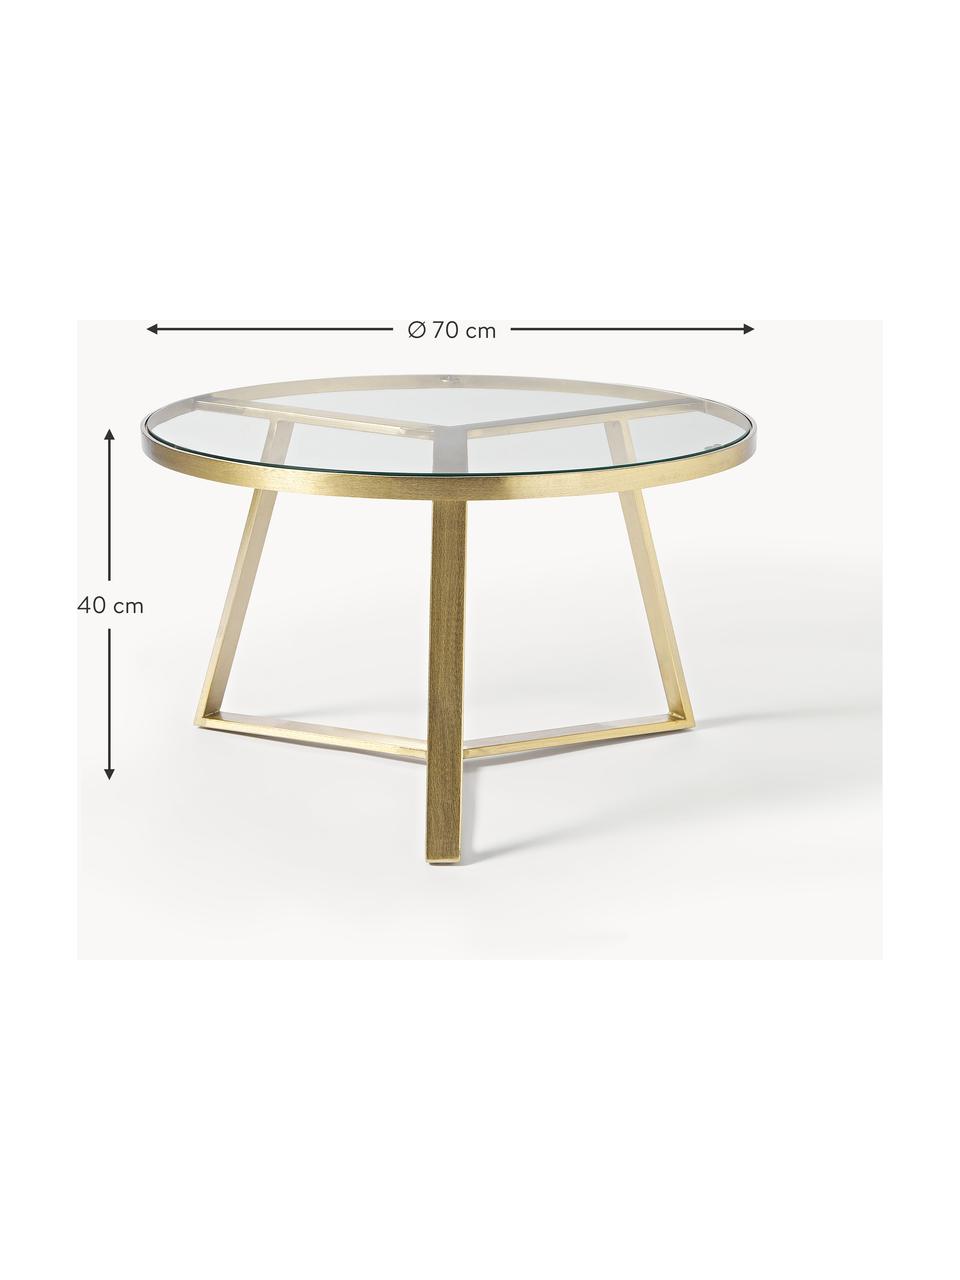 Runder Couchtisch Fortunata, Tischplatte: Glas, gehärtet, Gestell: Metall, gebürstet, Transparent, Goldfarben, Ø 70 x H 40 cm